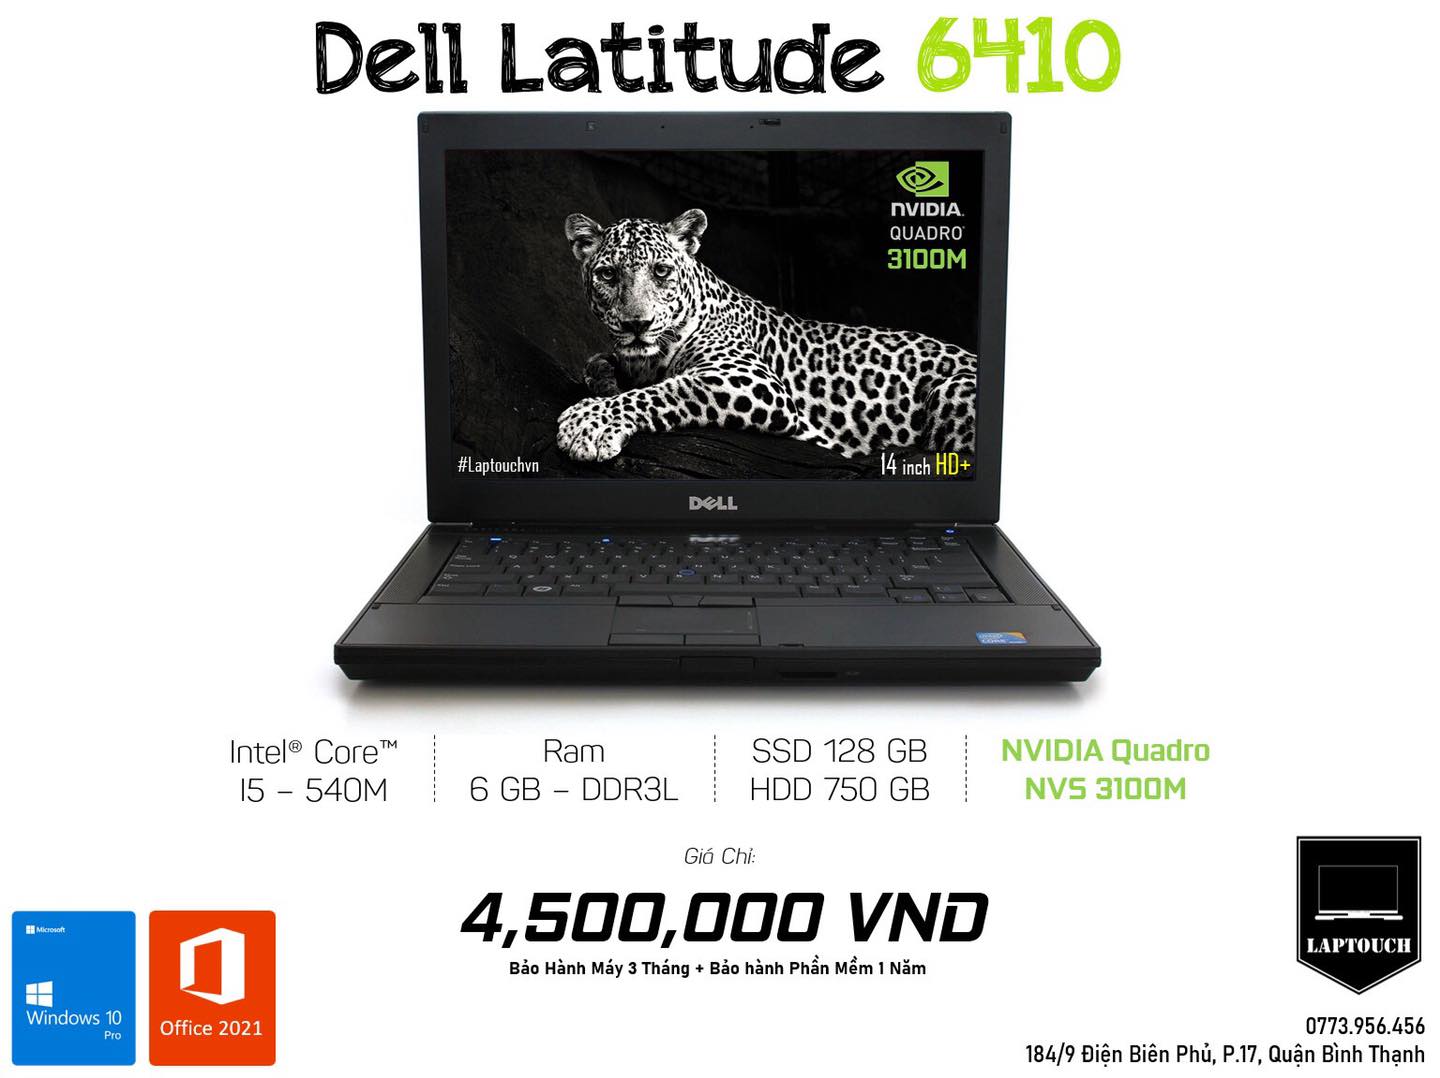 Dell Latitude 6410